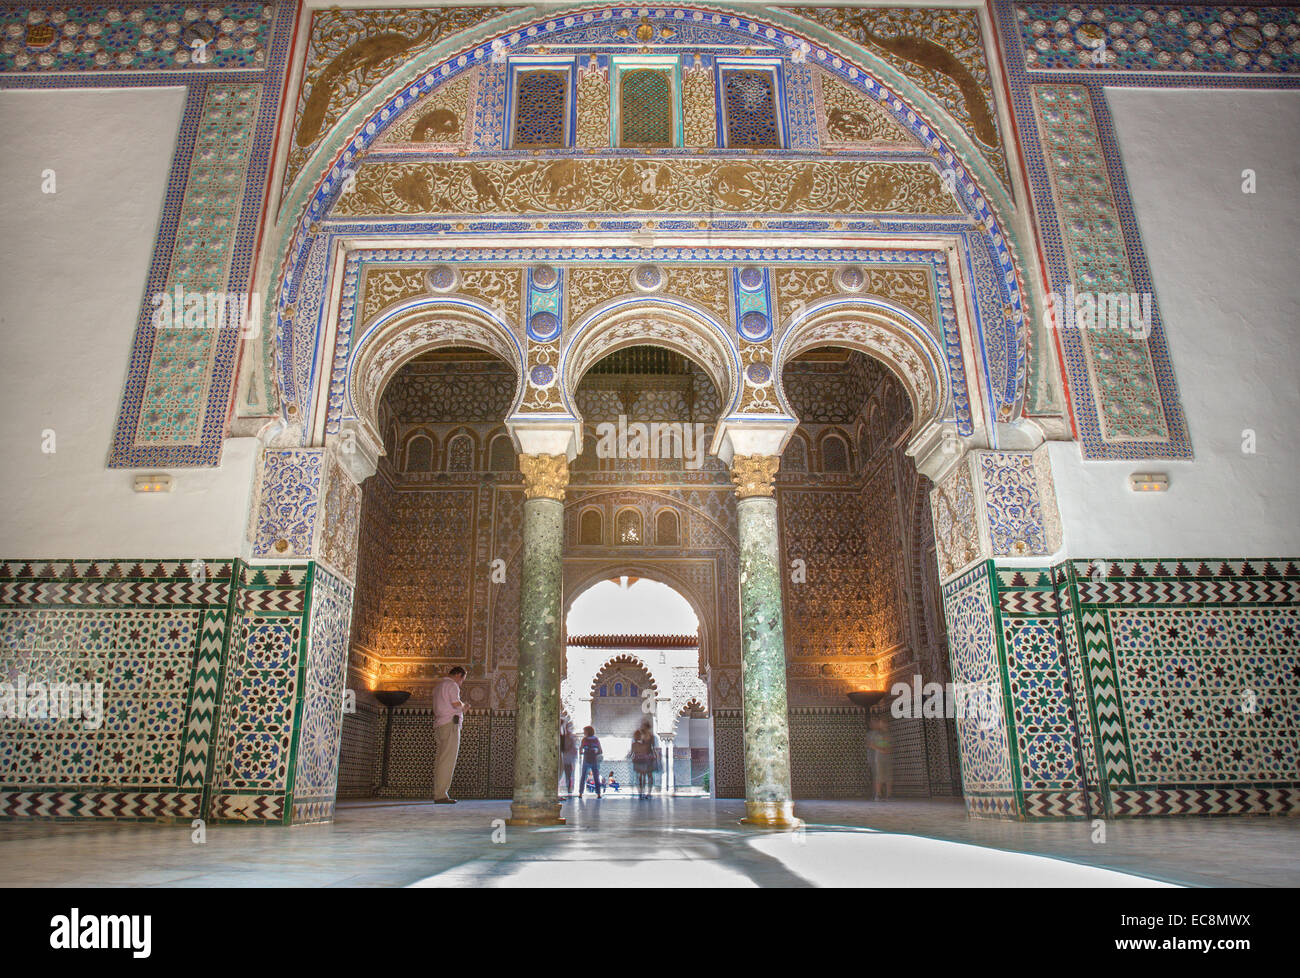 Sevilla, Spanien - 28. Oktober 2014: Das Portal der Halle der Botschafter im Alcazar von Sevilla. Stockfoto